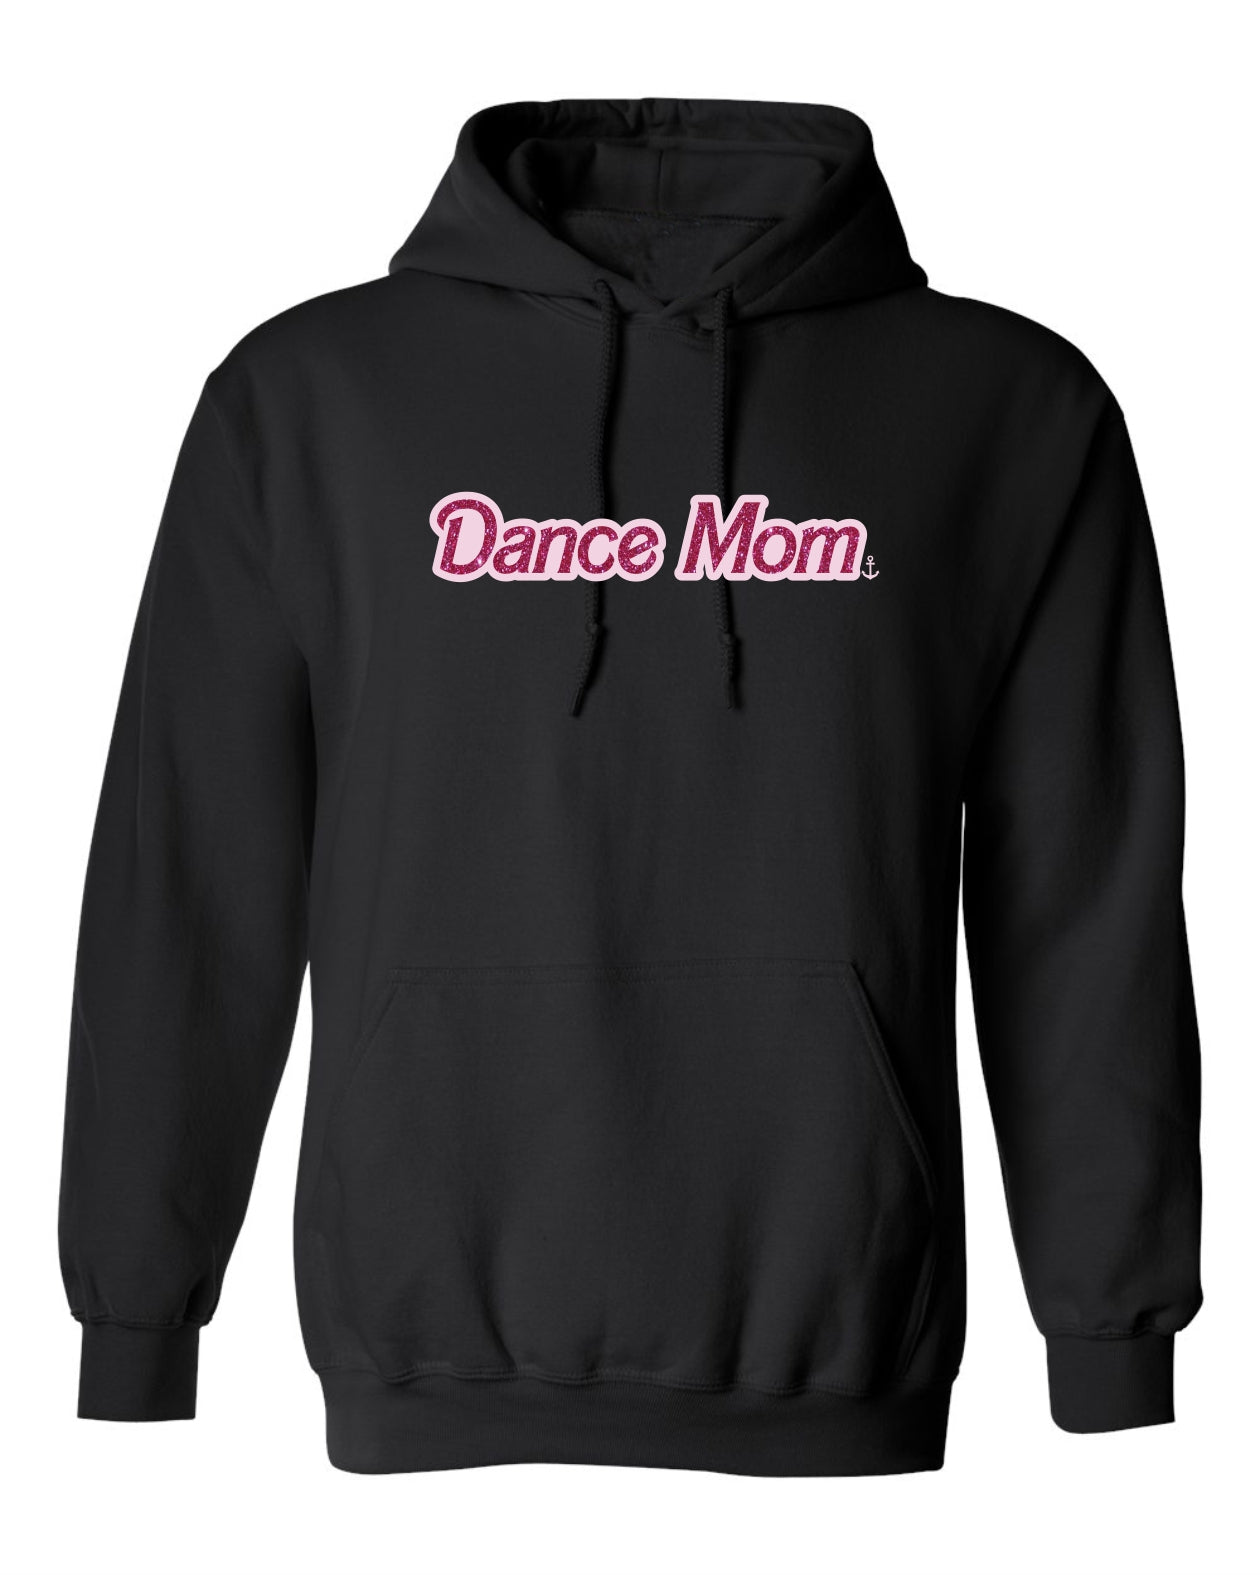 "Dance Mom" Unisex Hoodie